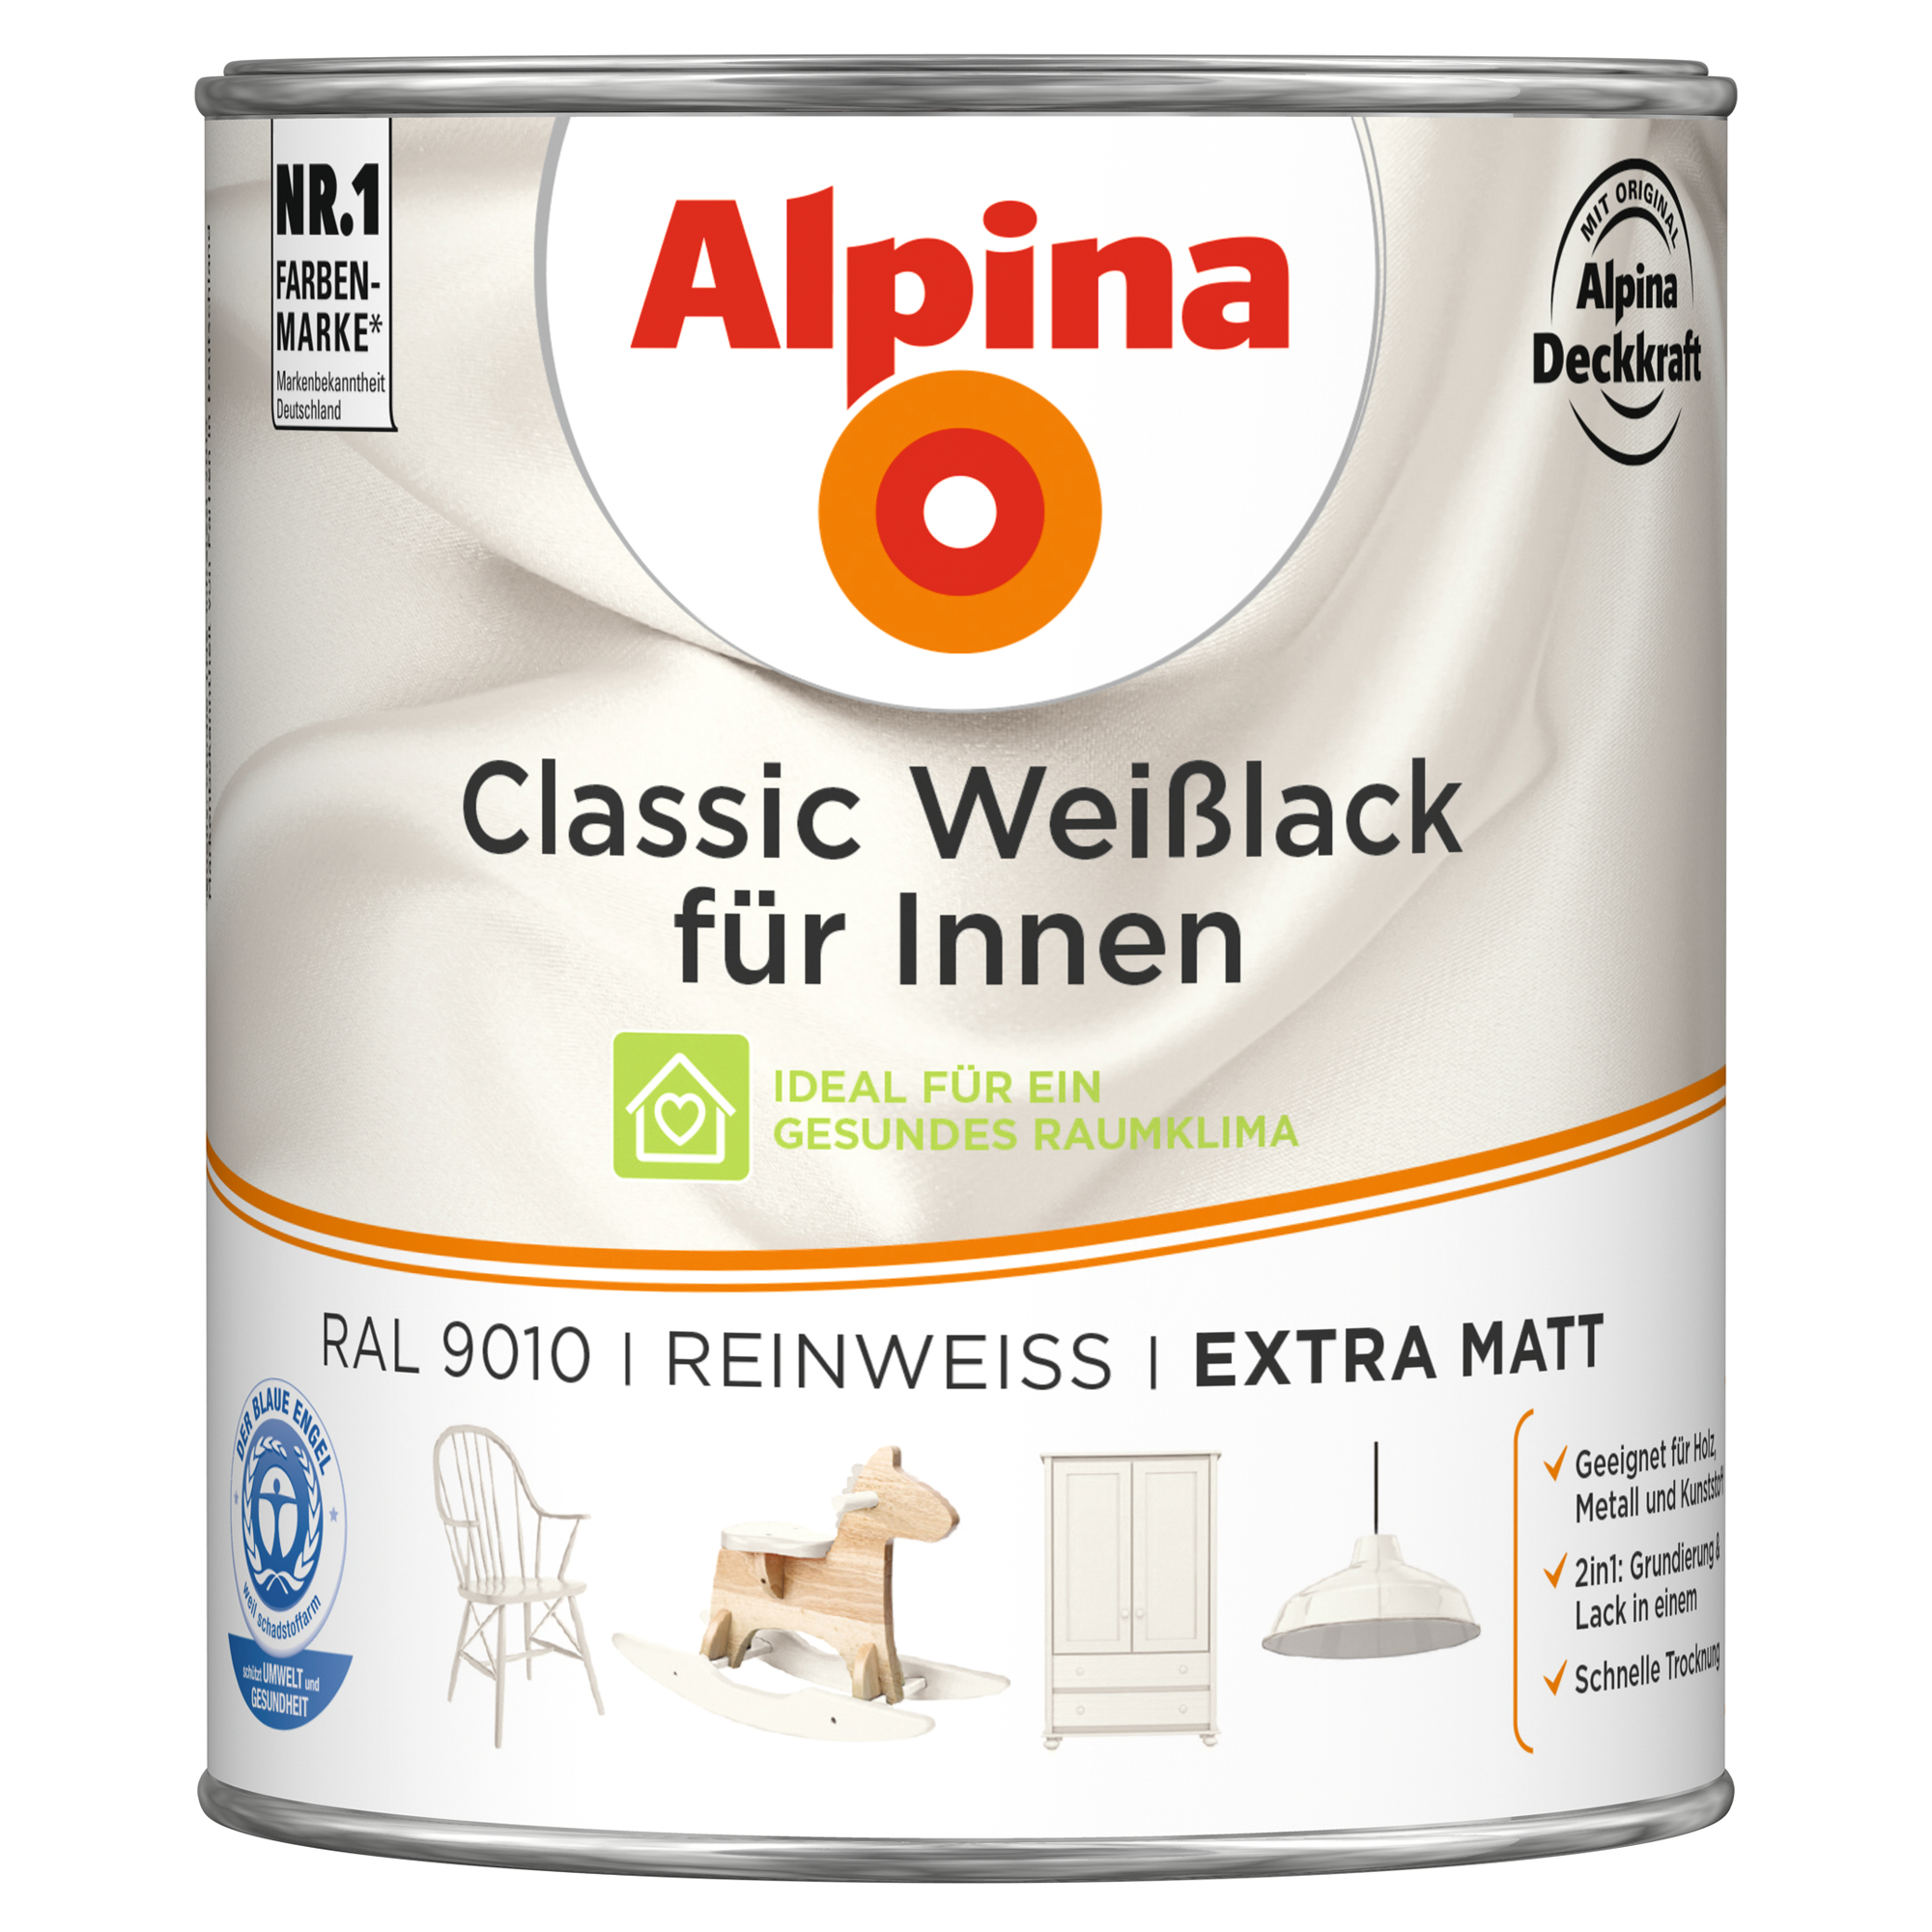 Weißlack für Innen reinweiß extramatt 750 ml + product picture